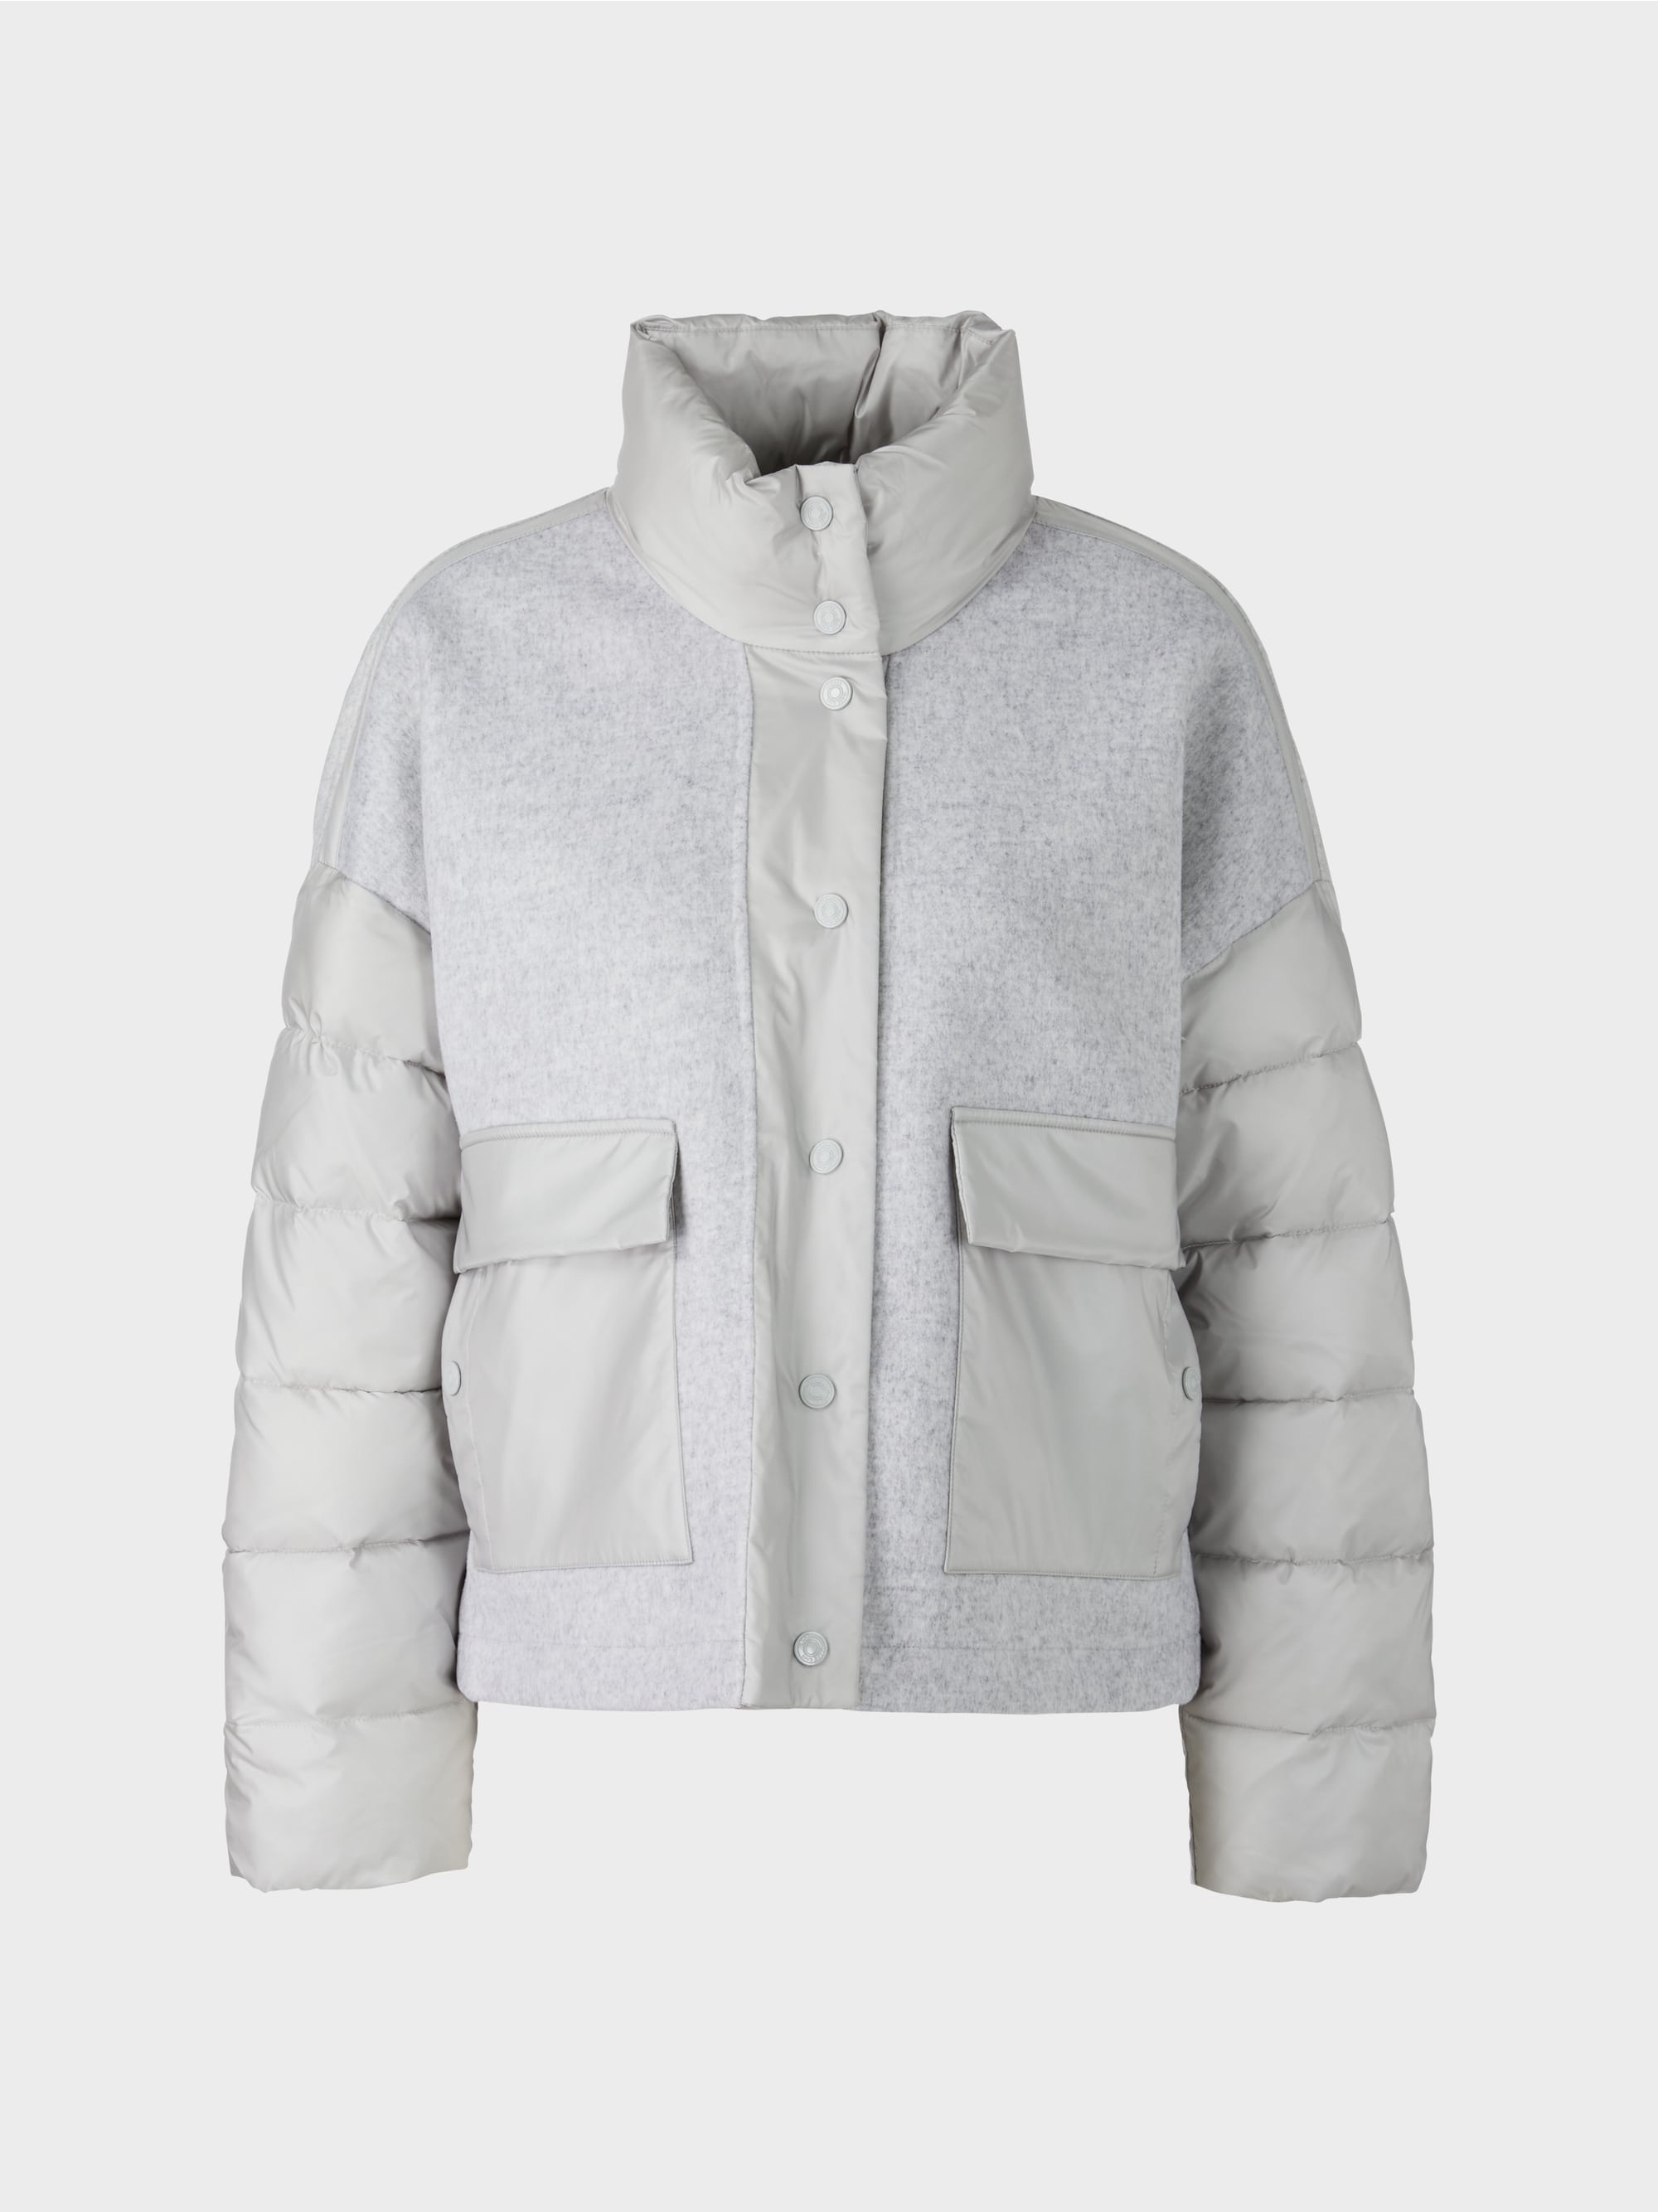 silver grey outdoor jacket